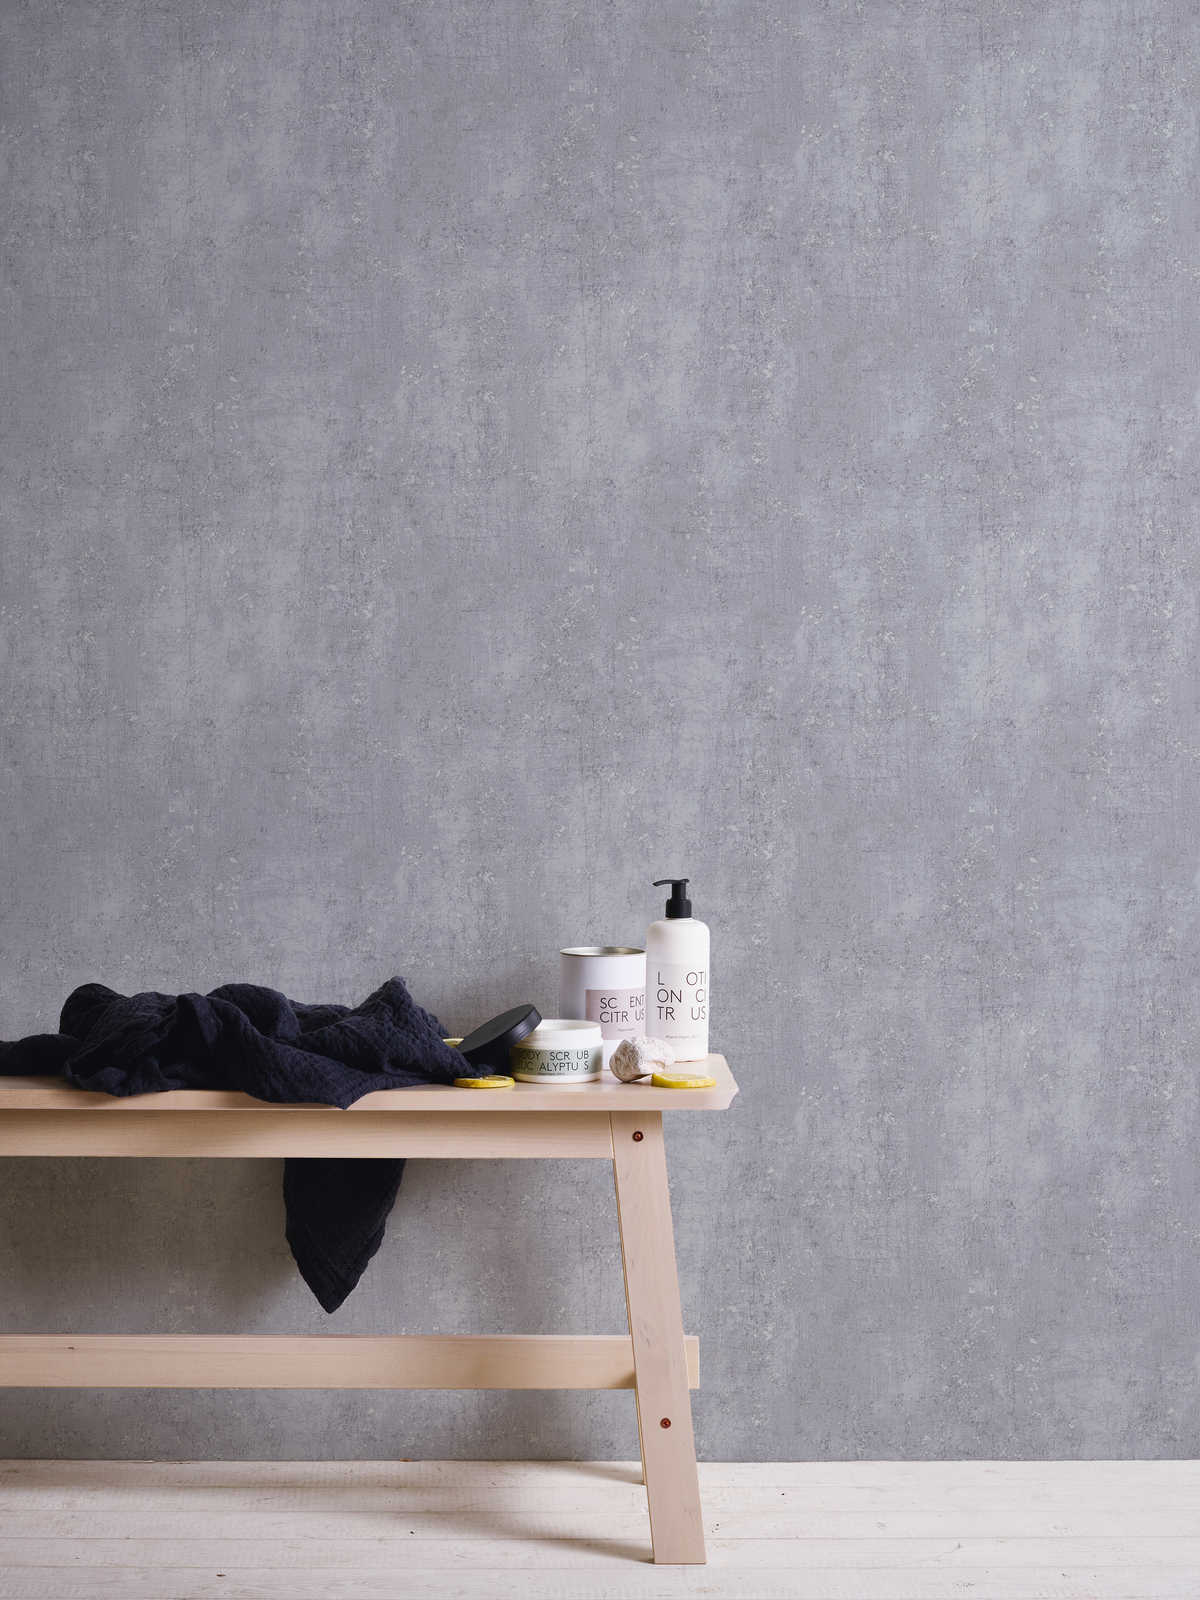             Grijs behang gipslook in gebruikte look - grijs, metallic
        